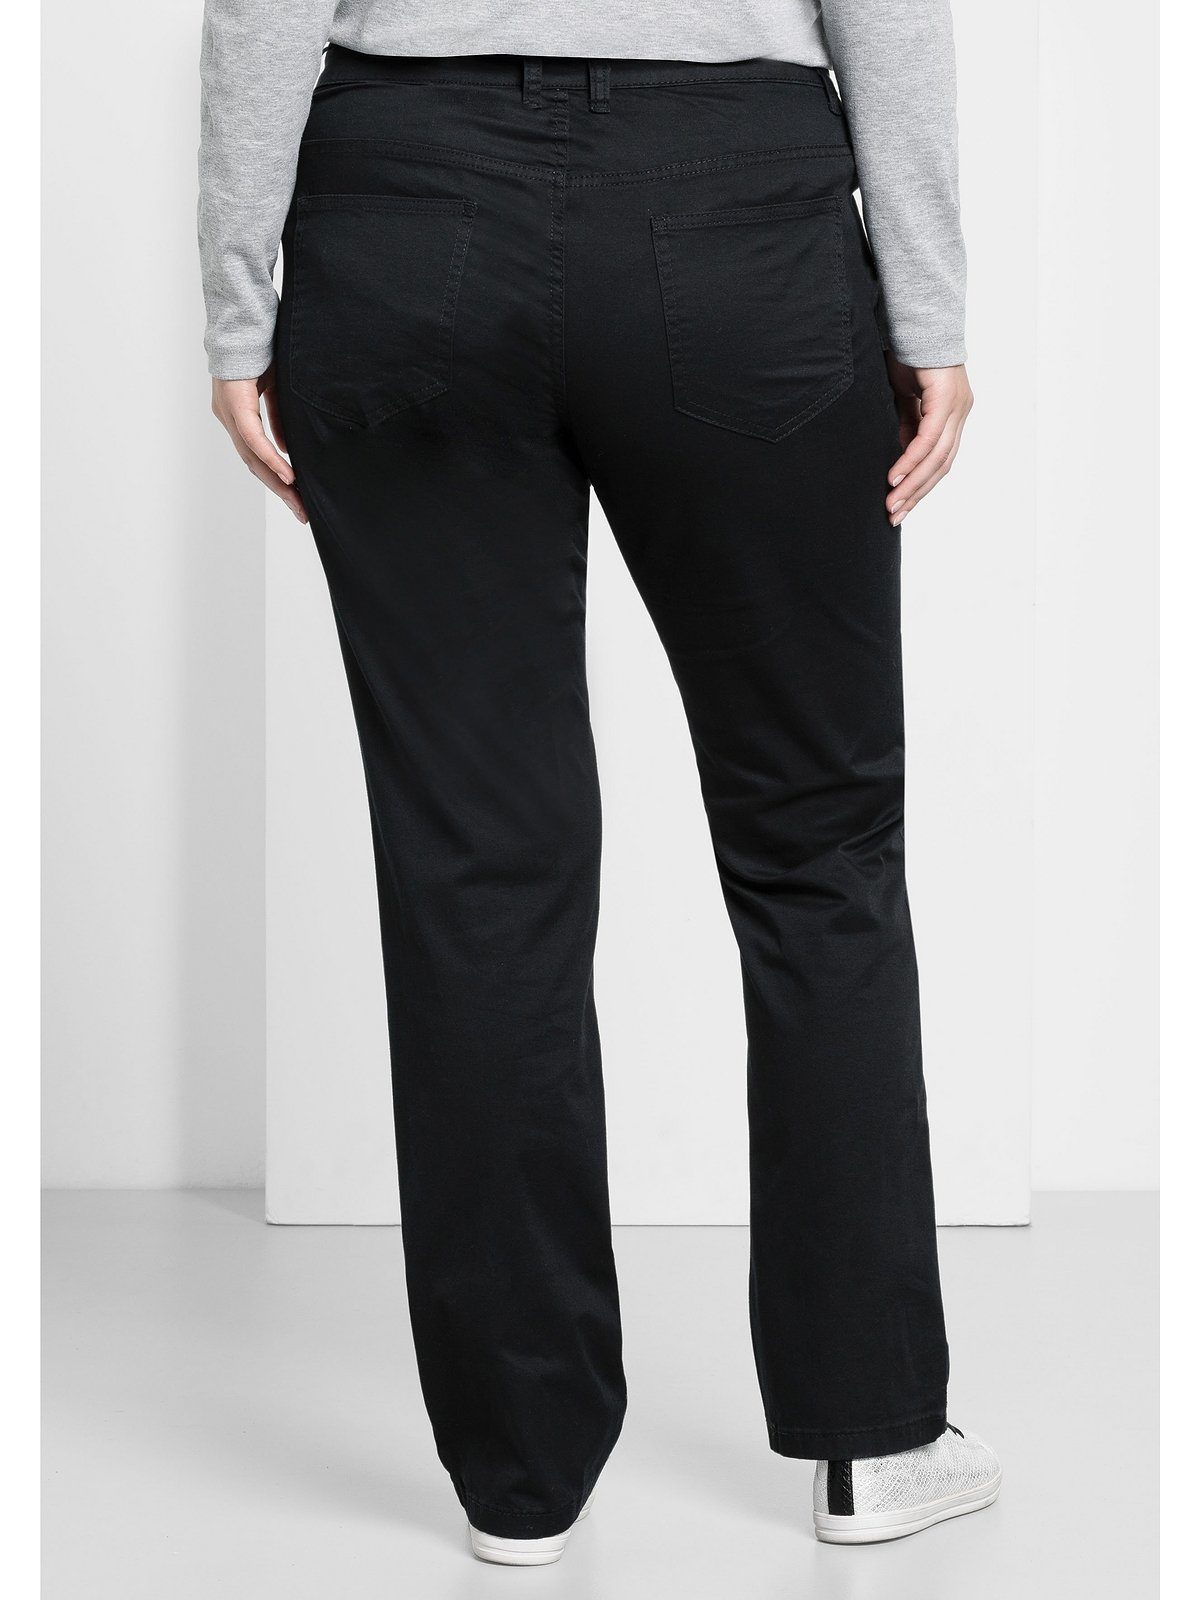 Damen Hosen Sheego Stretch-Hose Hose elastische Twill-Qualität